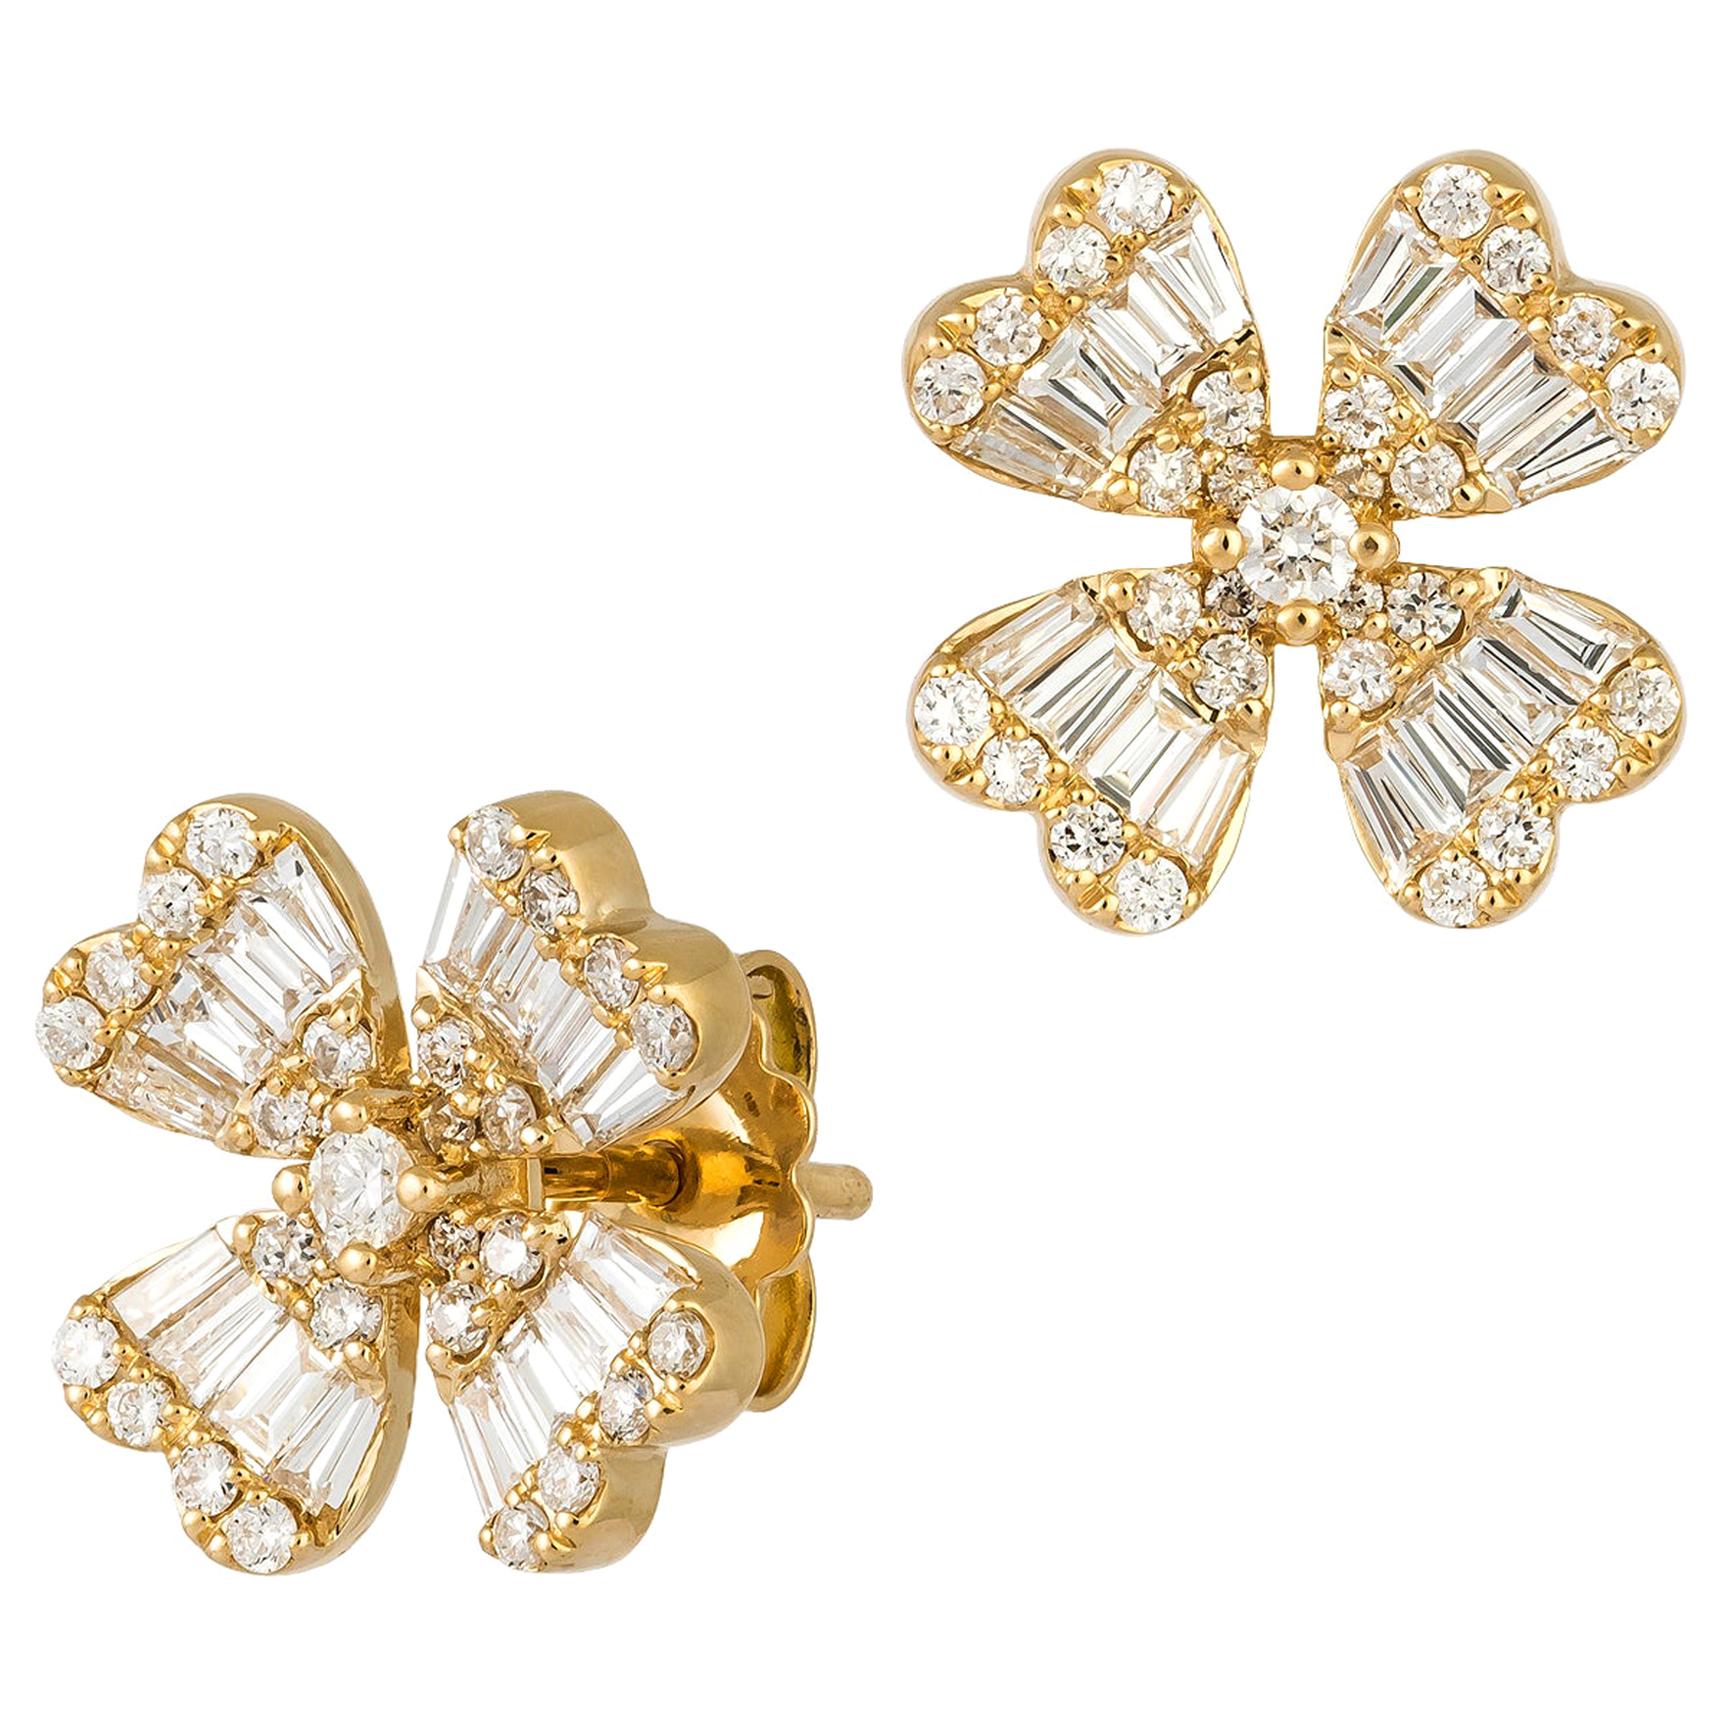 Impressive Diamond White 18 Karat Gold Earrings for Her